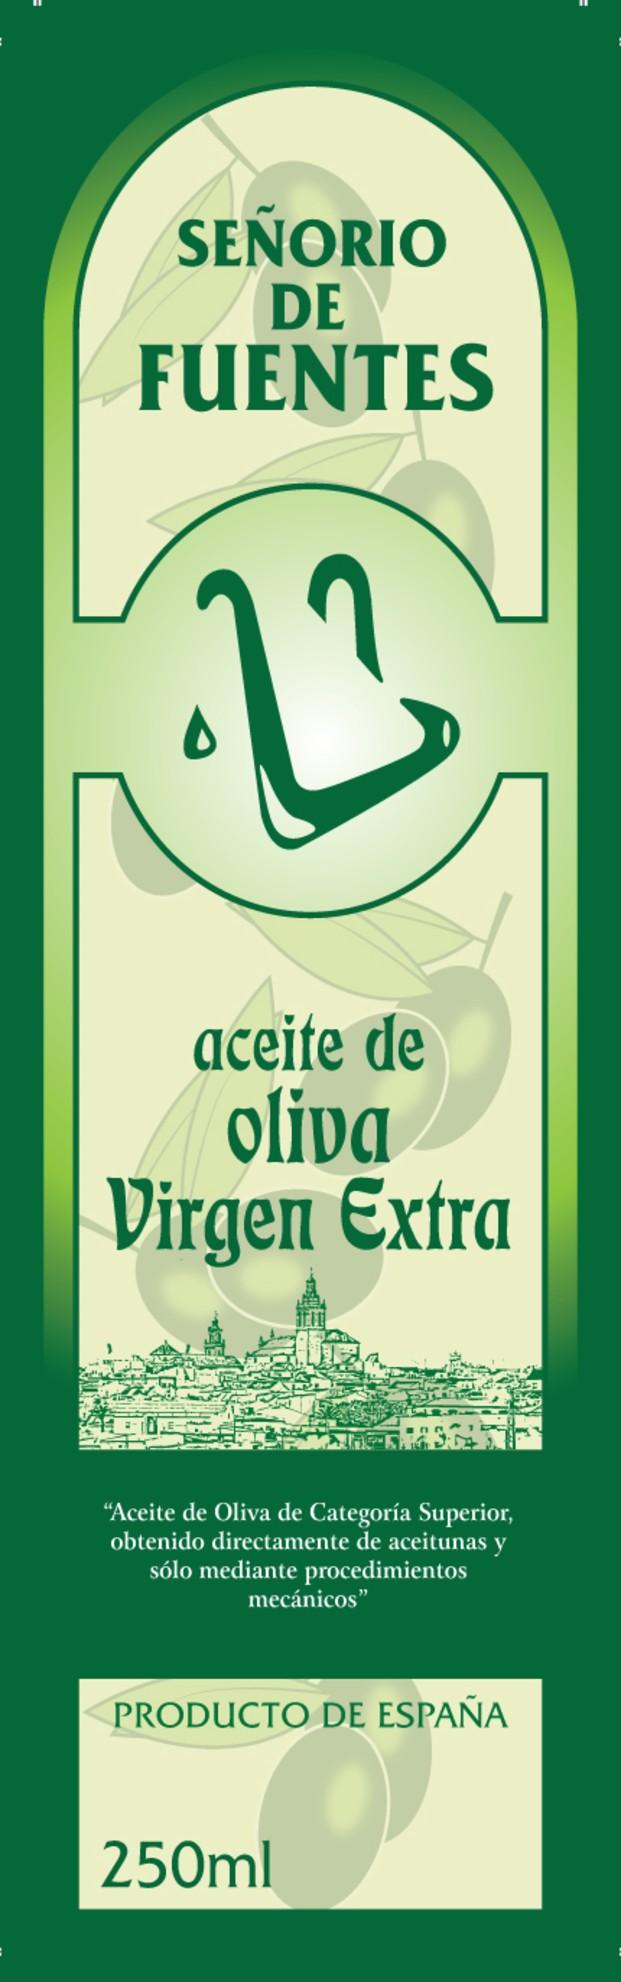 Aceite de oliva ecológico. Envase de 250 ml